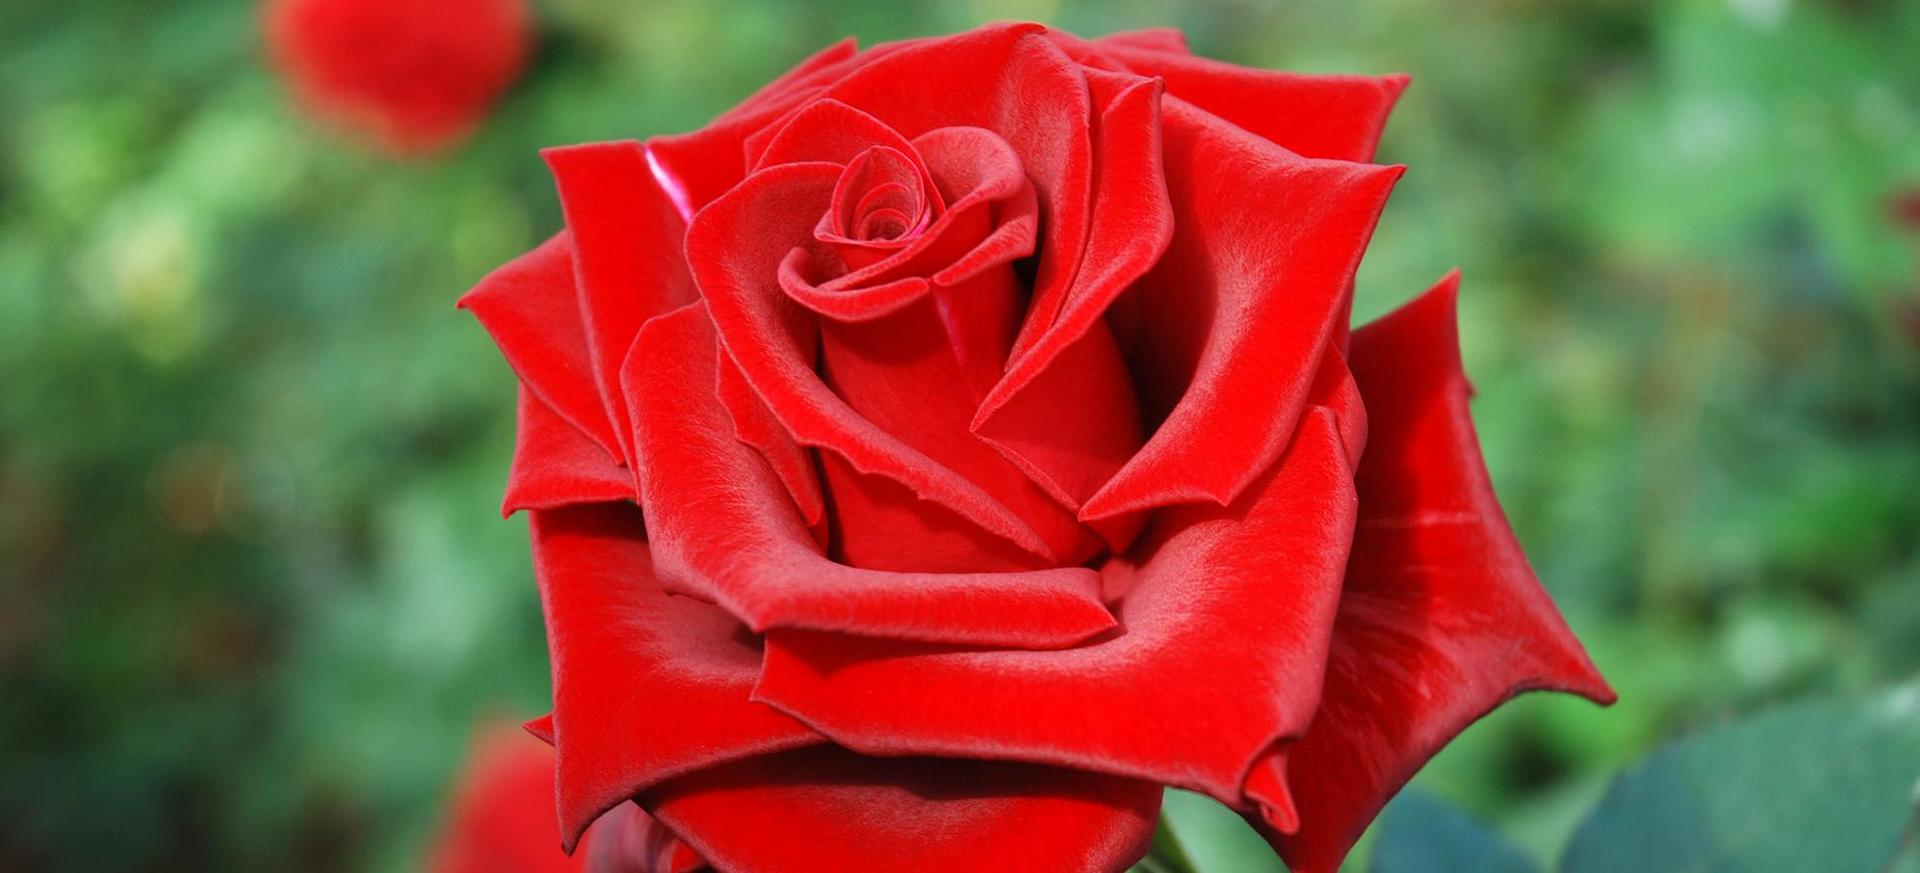 Annaffierei le rose con le mie lacrime per sentire il dolore delle loro spine e il rosso bacio dei loro petali.